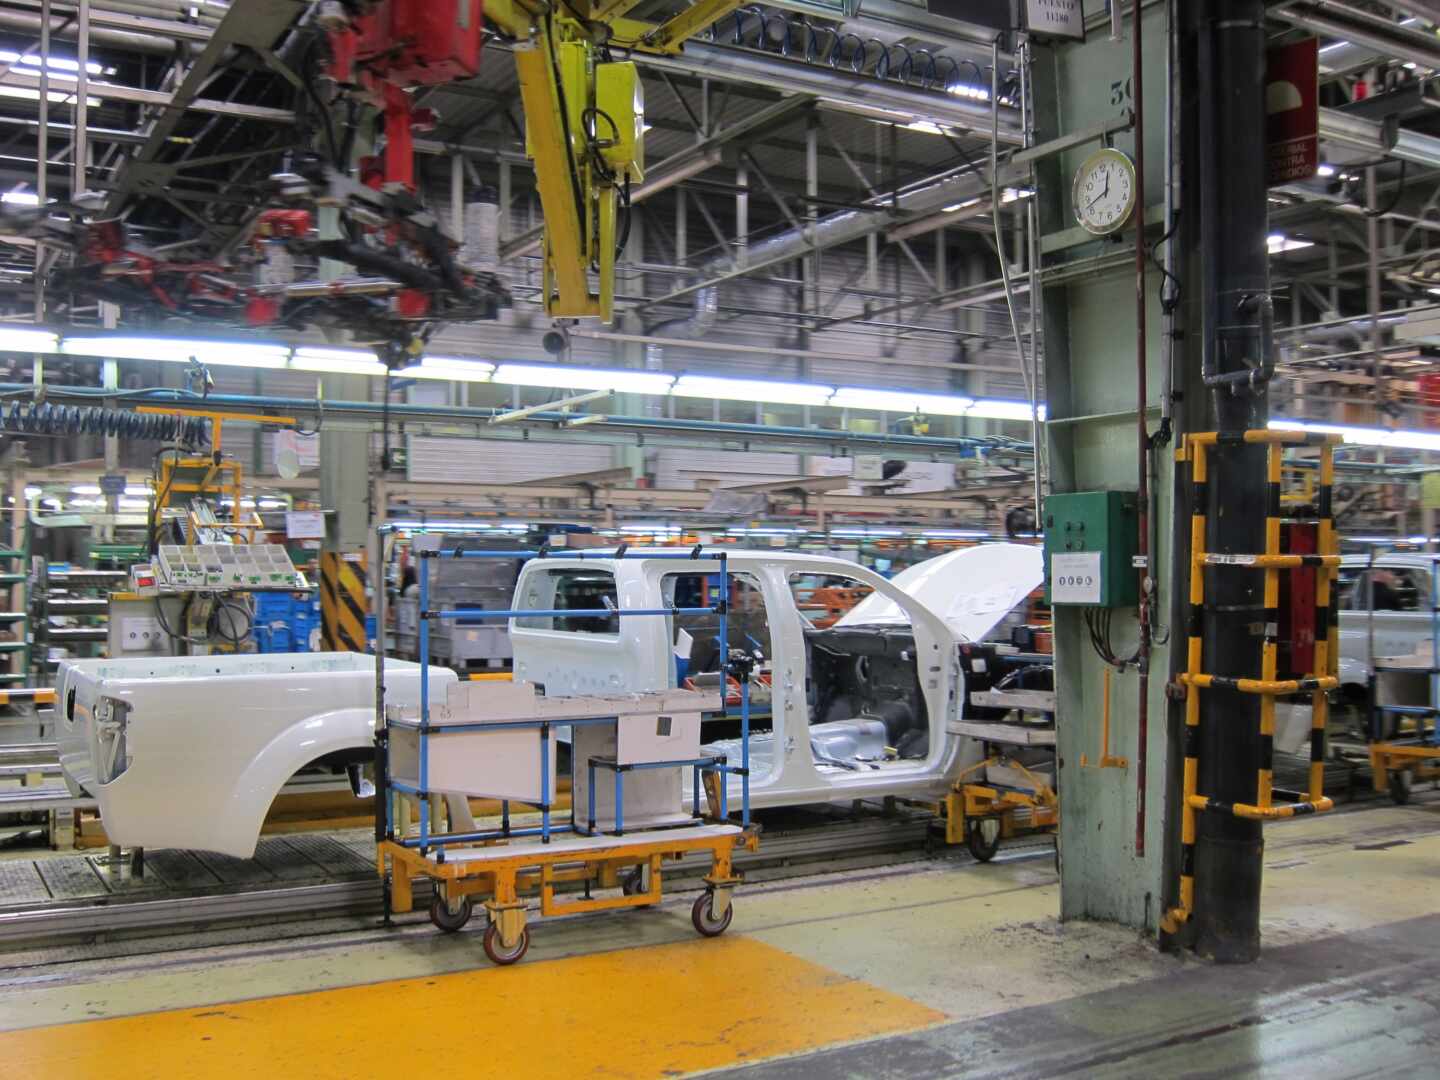 LG estudia instalar una fábrica de baterías en la planta de Nissan Barcelona